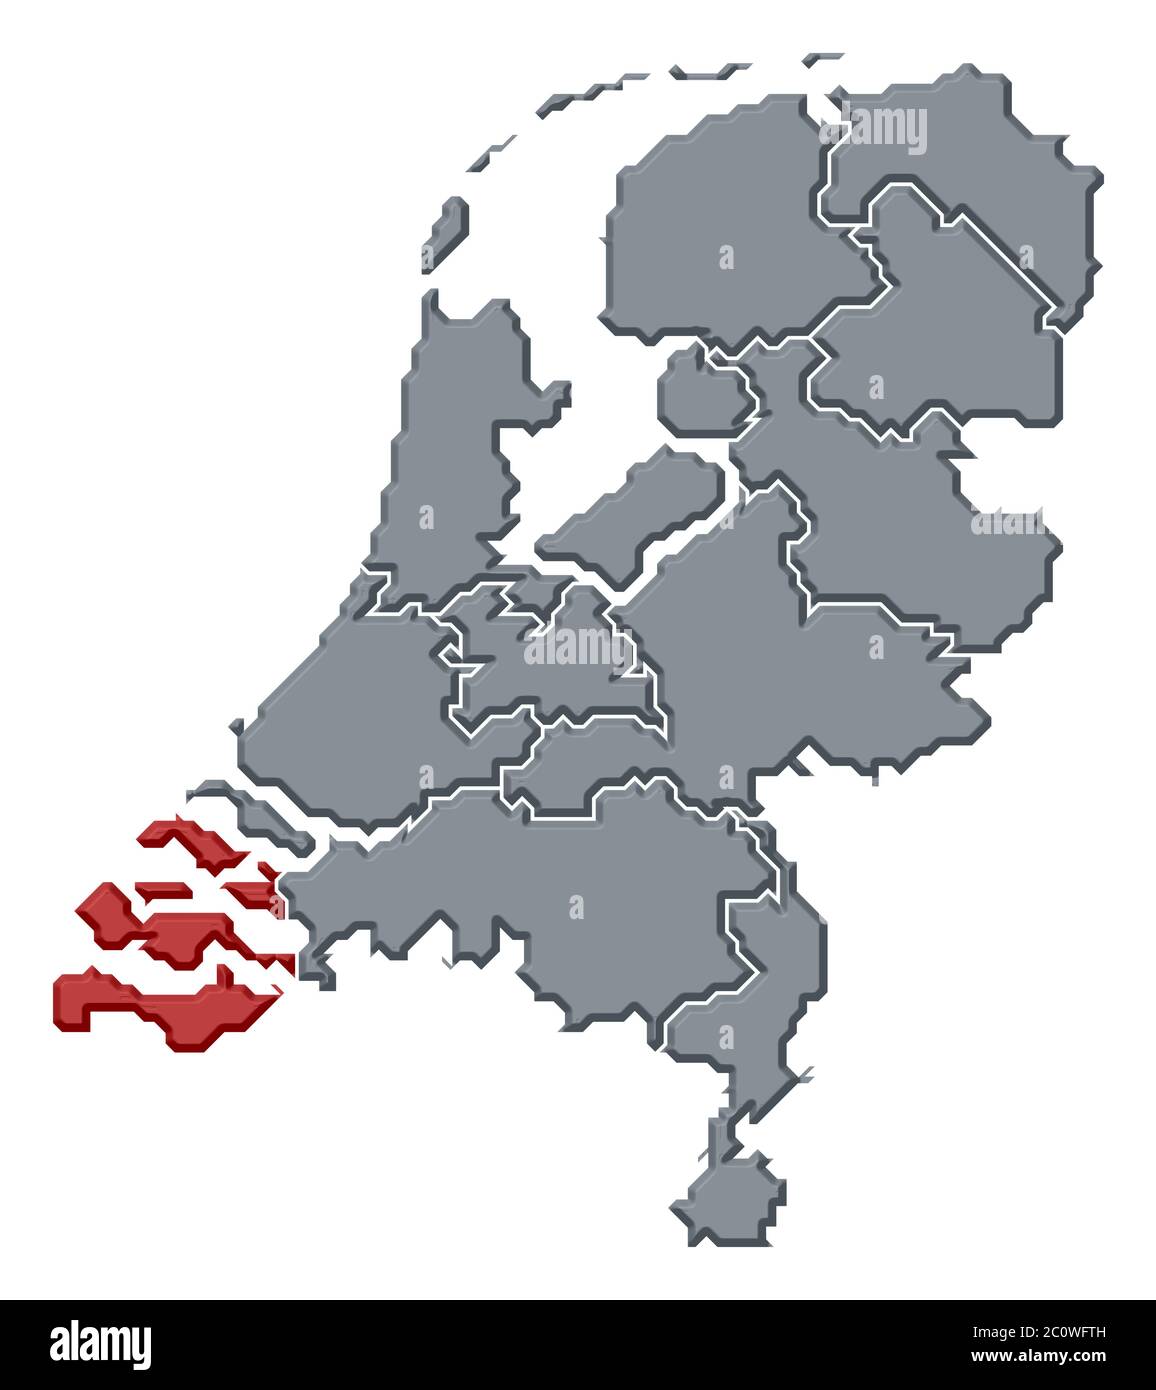 Politische Karte von Niederlande mit den mehrere Staaten wo Zeeland markiert ist. Stockfoto